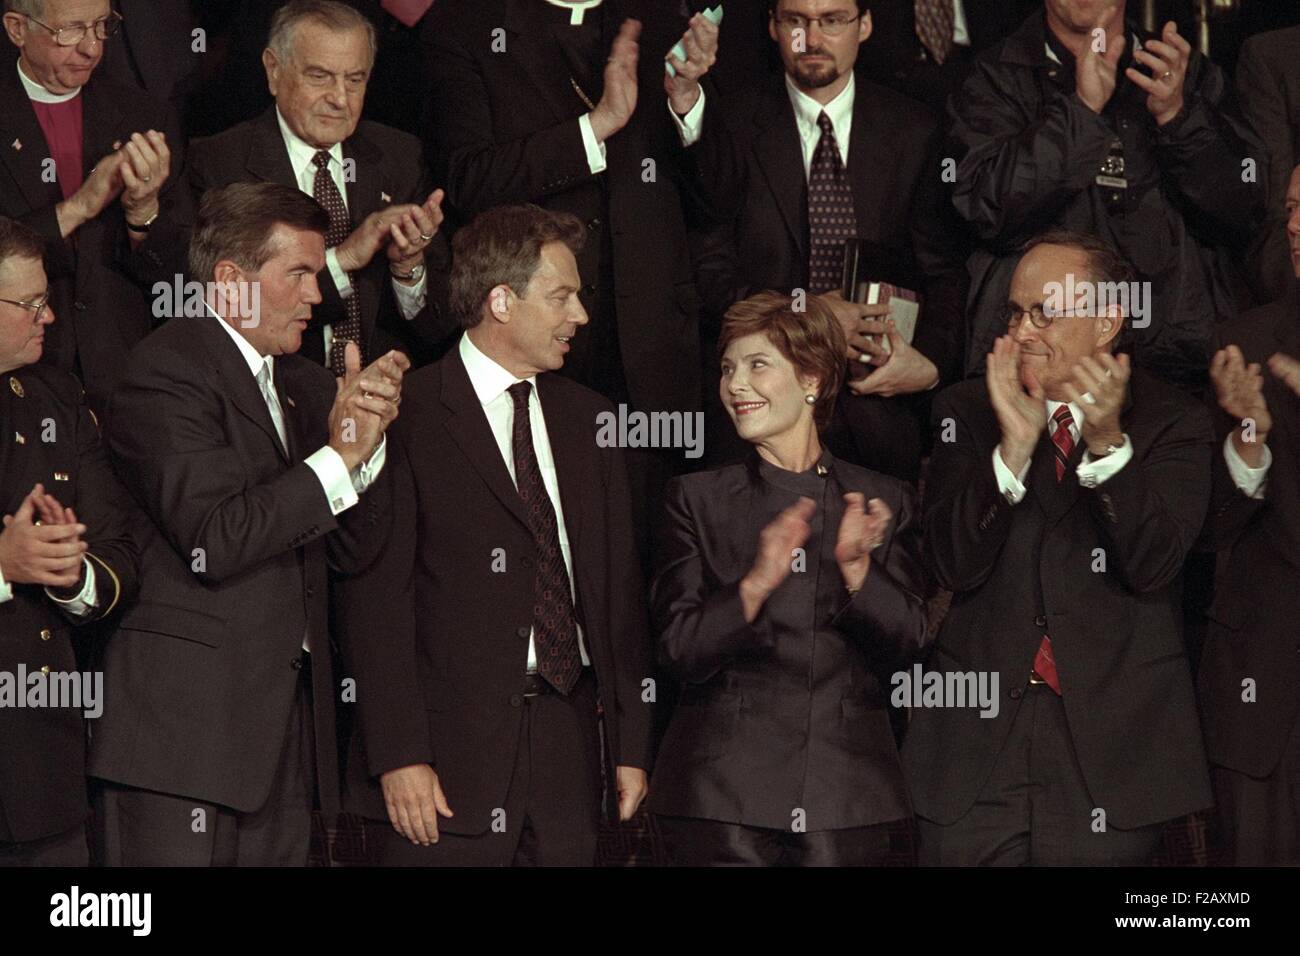 La Première dame Laura Bush avec Tom Ridge, PM Tony Blair, et le maire de New York Rudy Giuliani. Les trois hommes ont été mentionnés dans le président George W. Bush allocution dans laquelle il a identifié la responsabilité d'al-Qaïda et le gouvernement taliban de l'Afghanistan comme leur complice. Le 20 septembre 2001. (BSLOC 2015 2 165) Banque D'Images